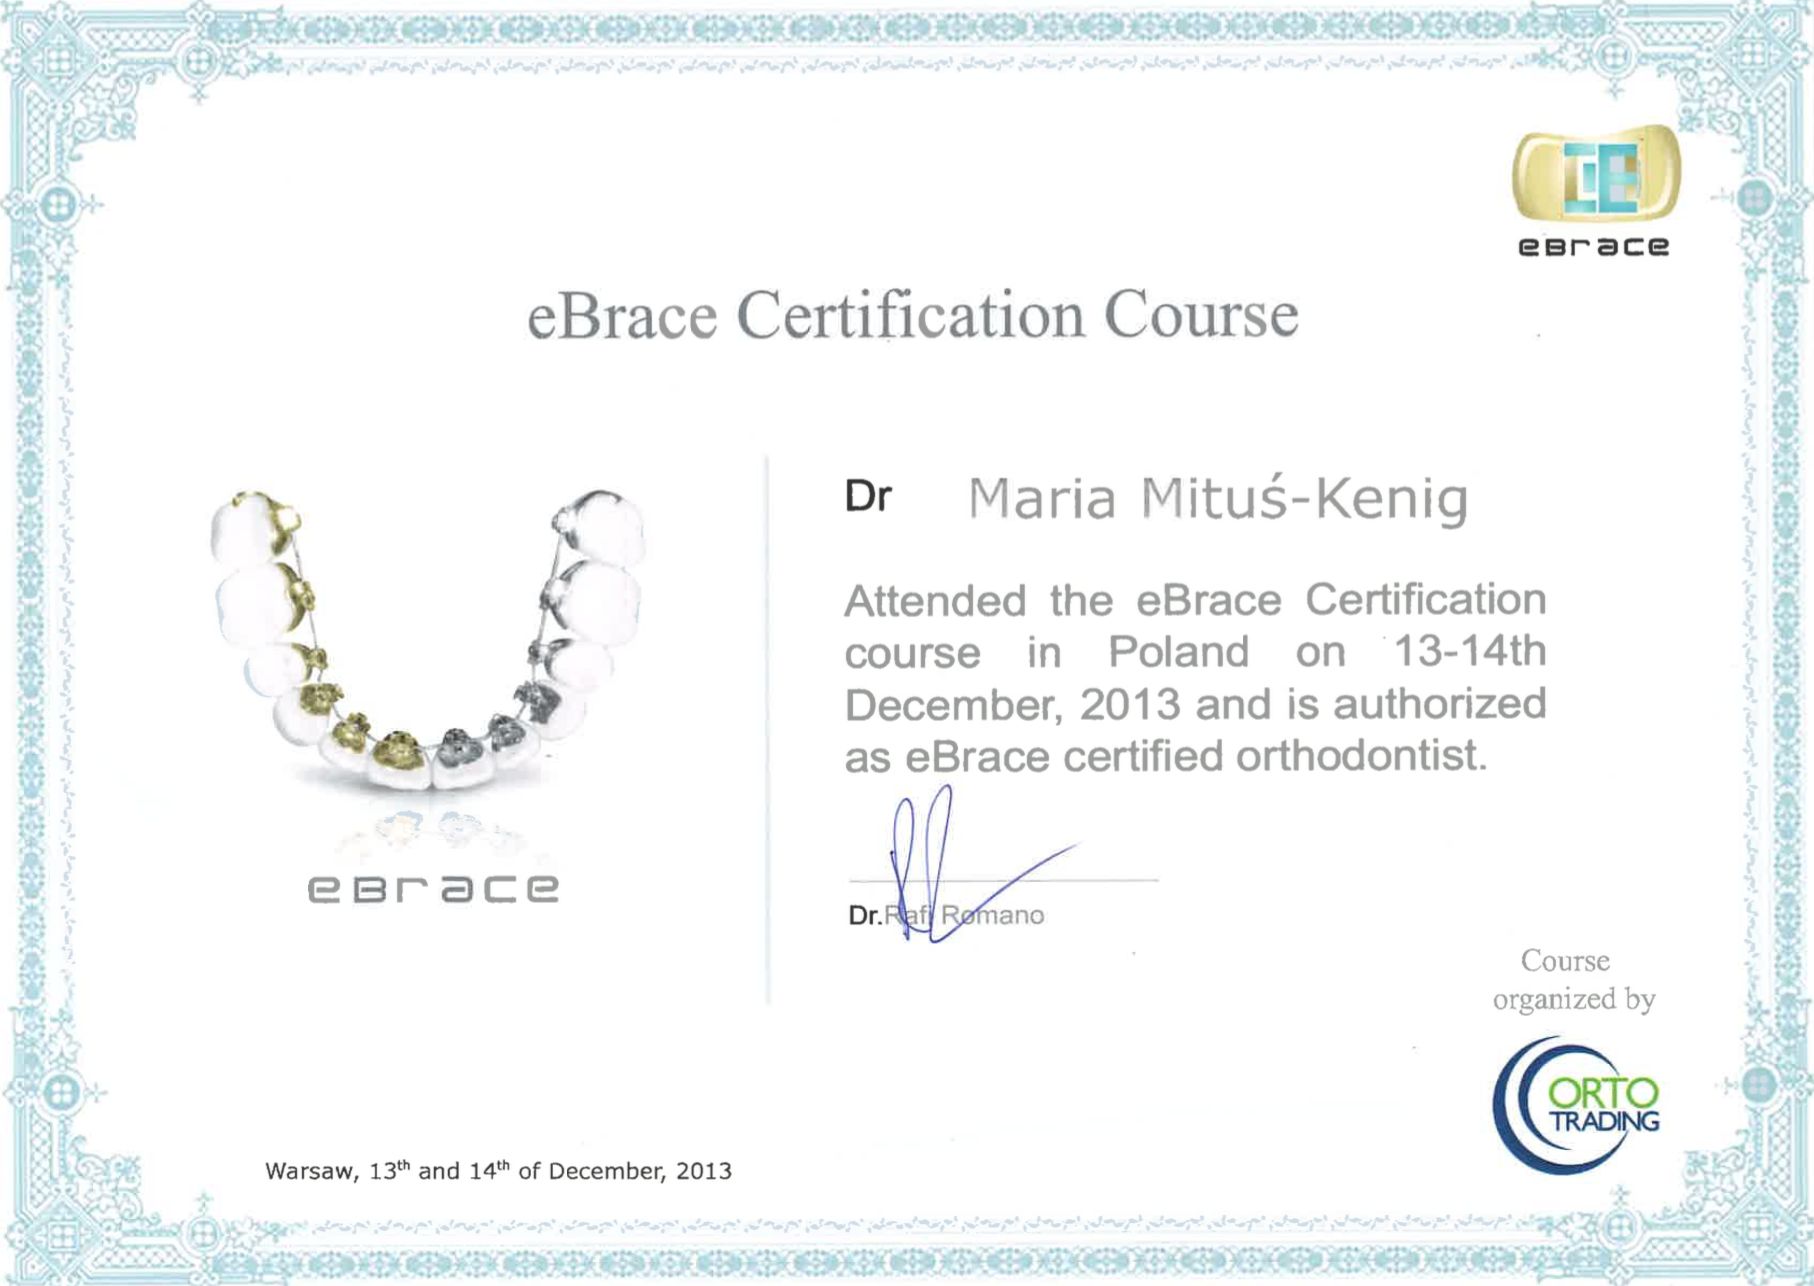 certyfikat potwierdzający udział w kursie ortodontycznym